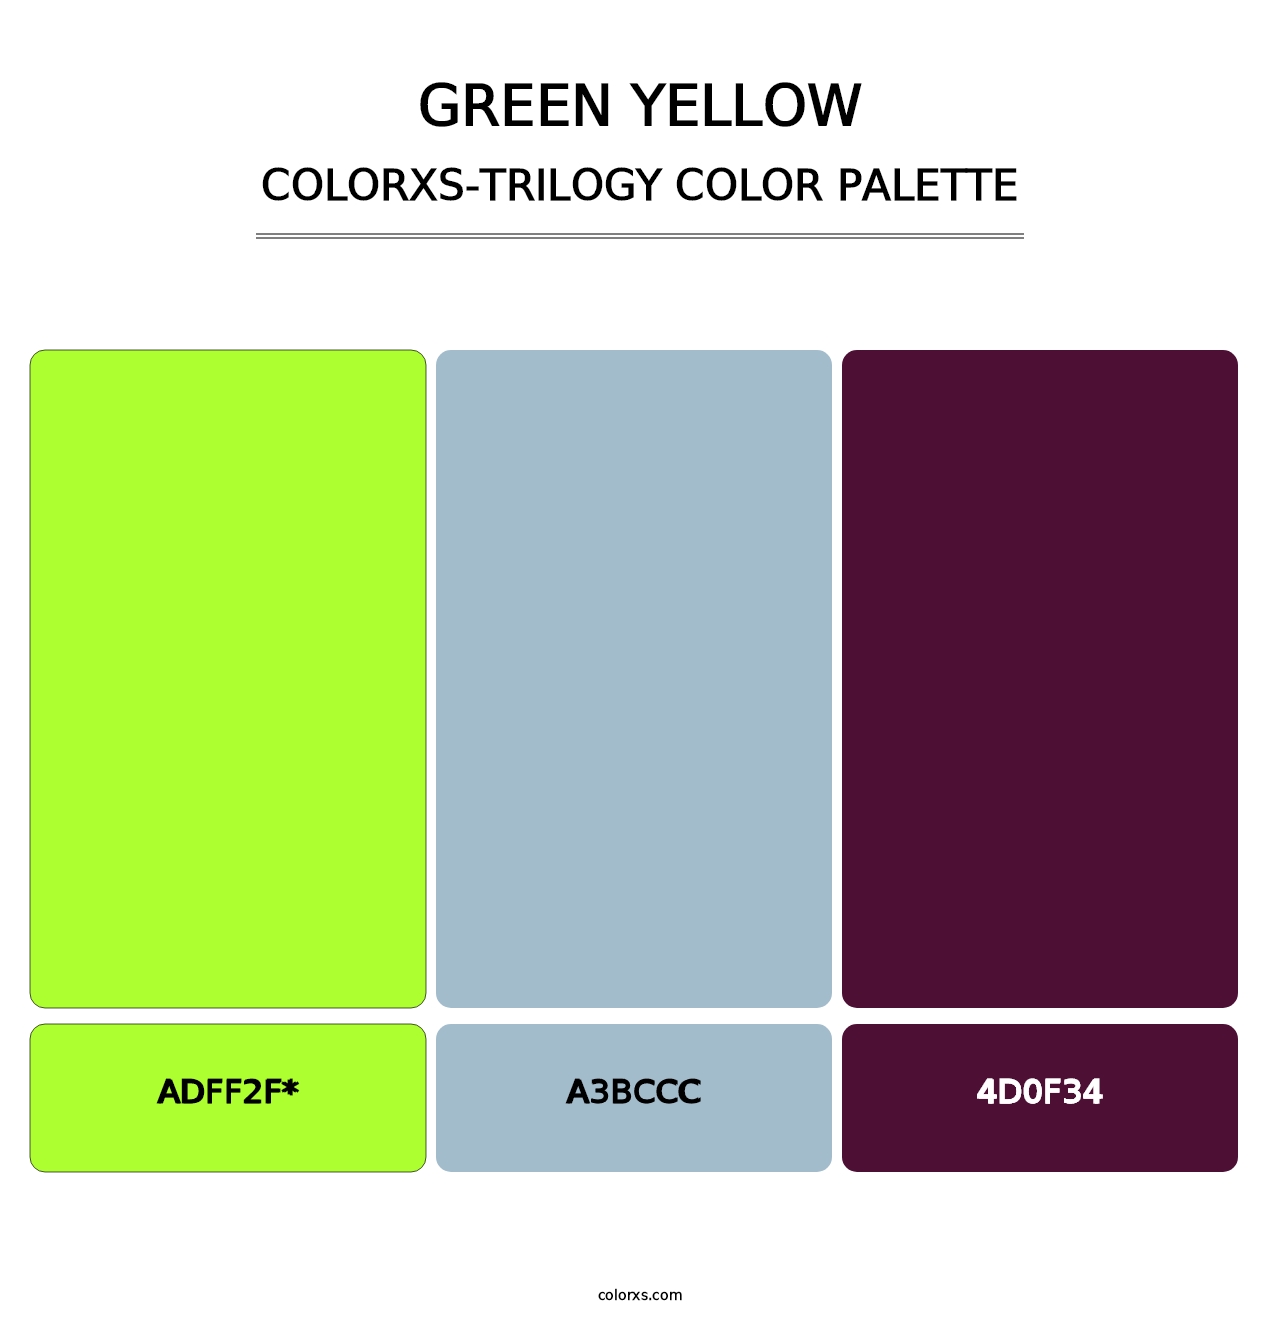 Green Yellow - Colorxs Trilogy Palette